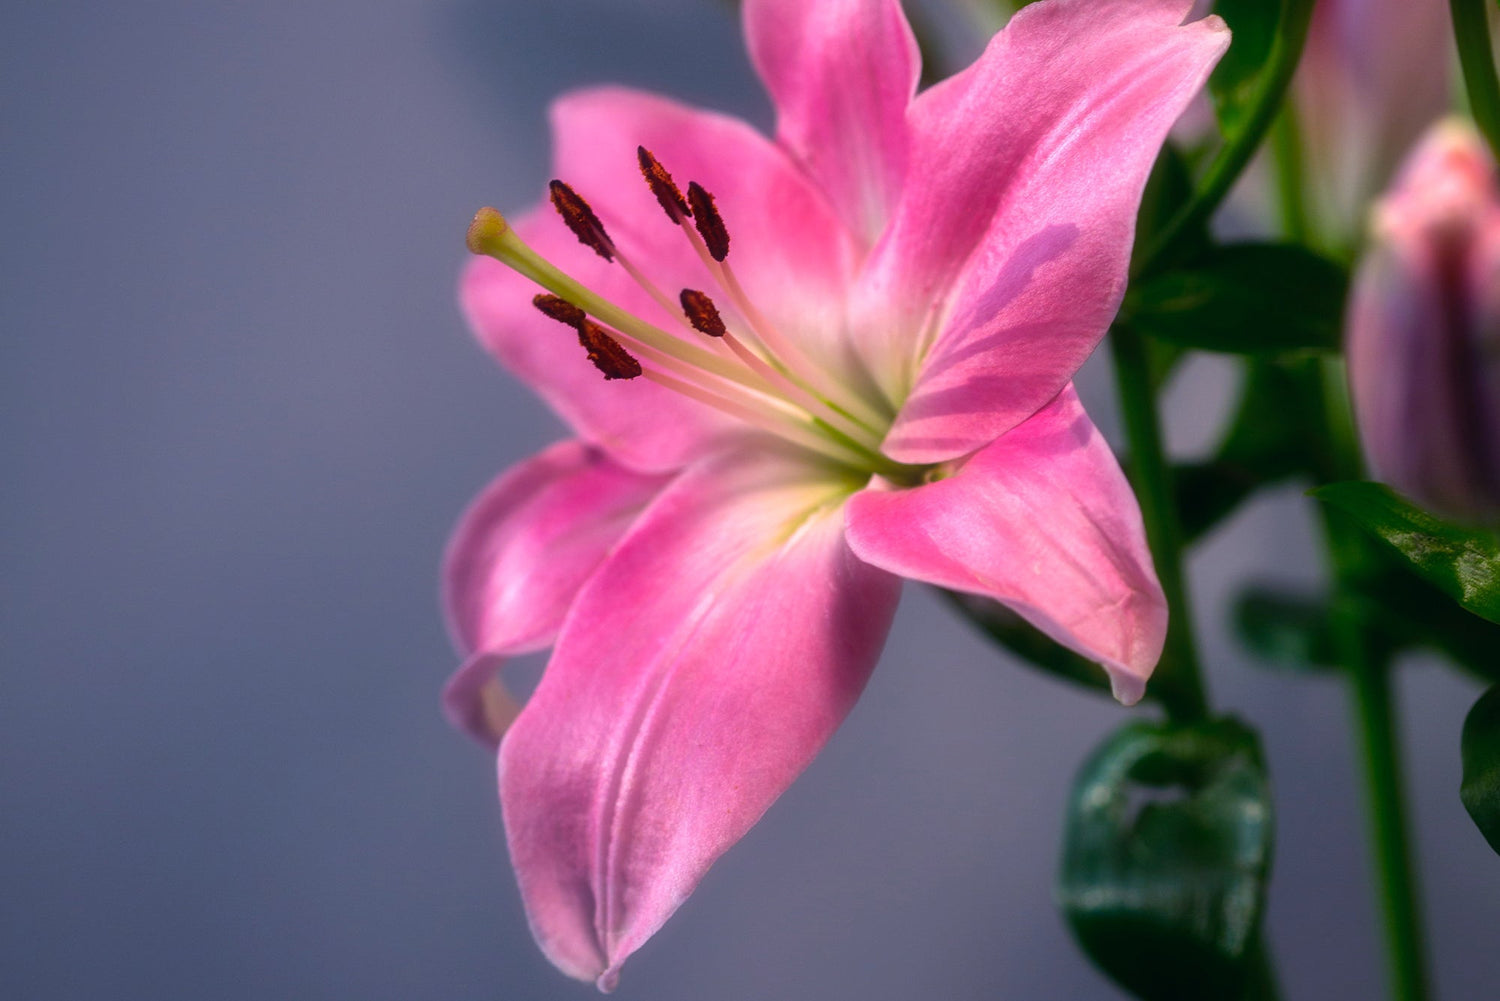 50 Rekomendasi Ucapan Selamat Pagi dalam Buket Bunga - The Million Bloom®